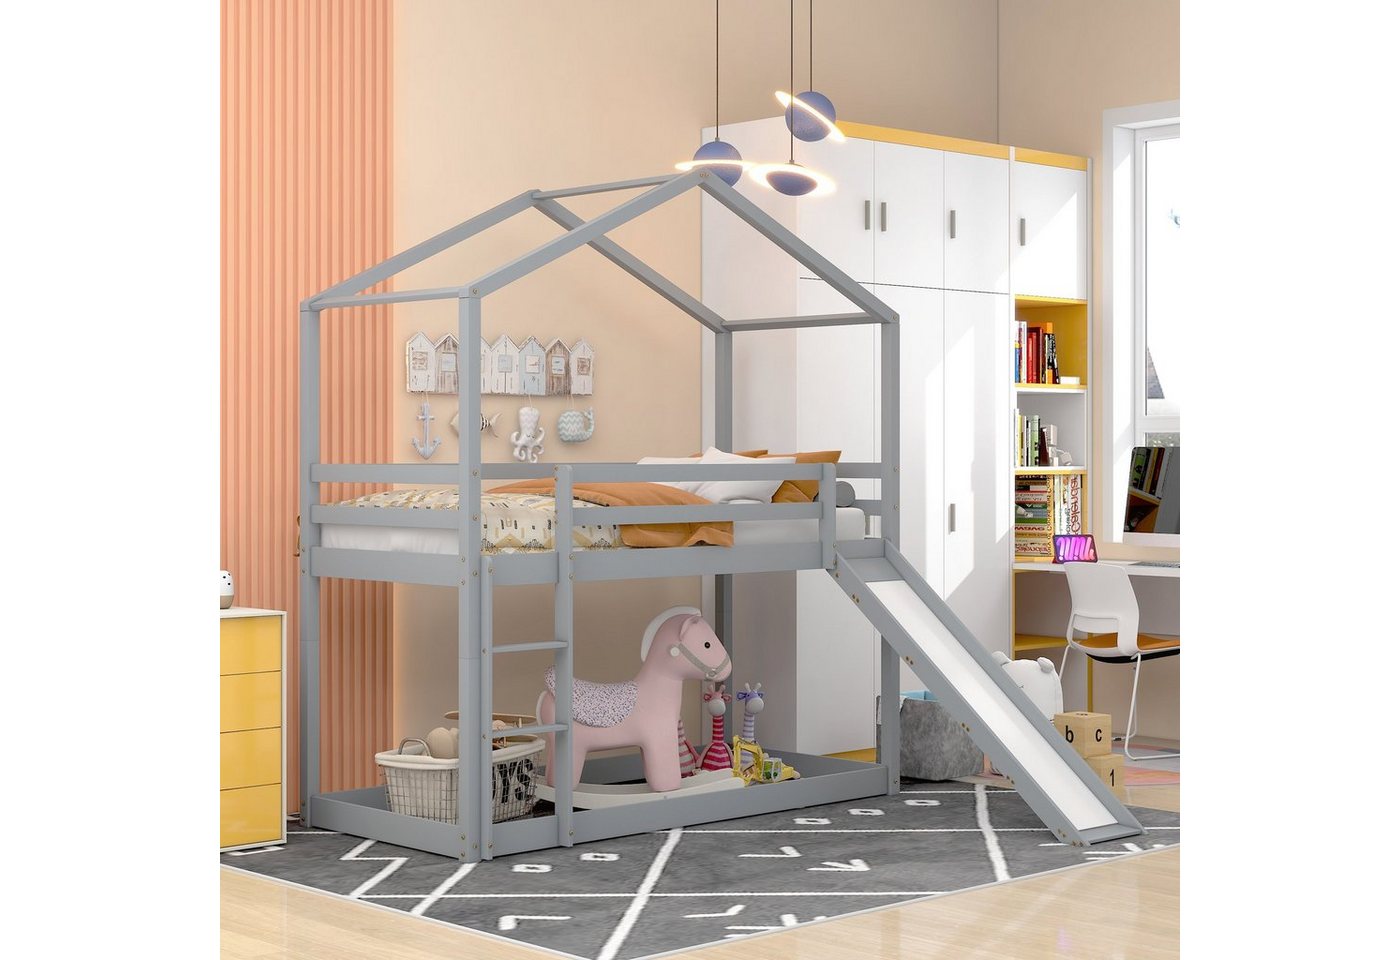 SOFTWEARY Etagenbett mit 2 Schlafgelegenheiten und Lattenrost (90x200 cm, umbaufähig zu 2 Einzelbetten), Kinderbett inkl. Rausfallschutz, Kiefer von SOFTWEARY